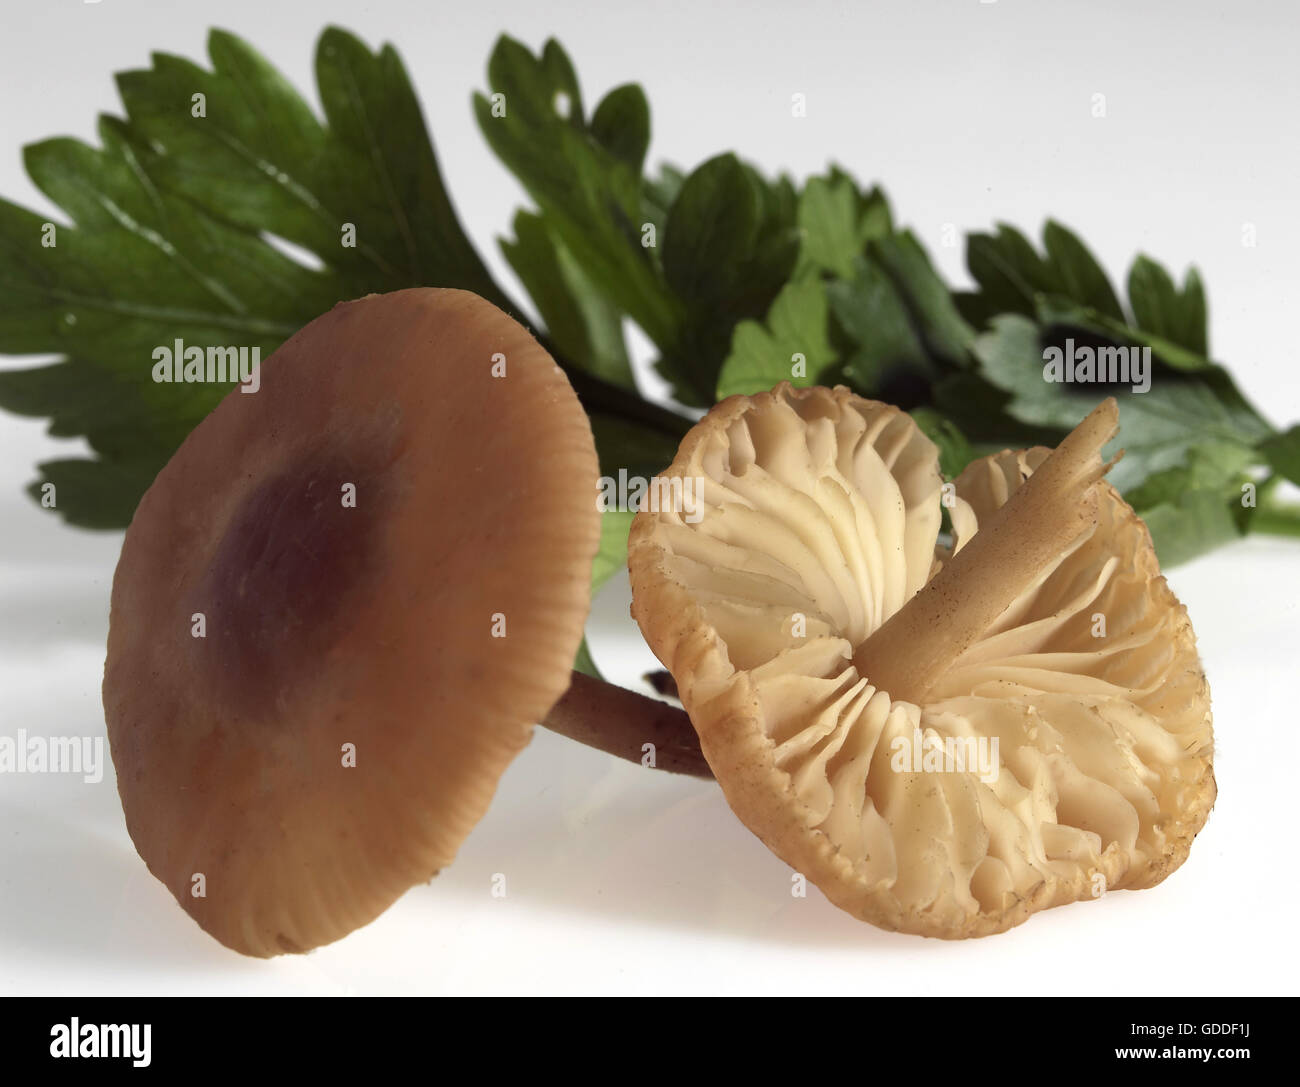 Bague fée champignon, Marasmius oreades, champignon comestible contre fond blanc Banque D'Images